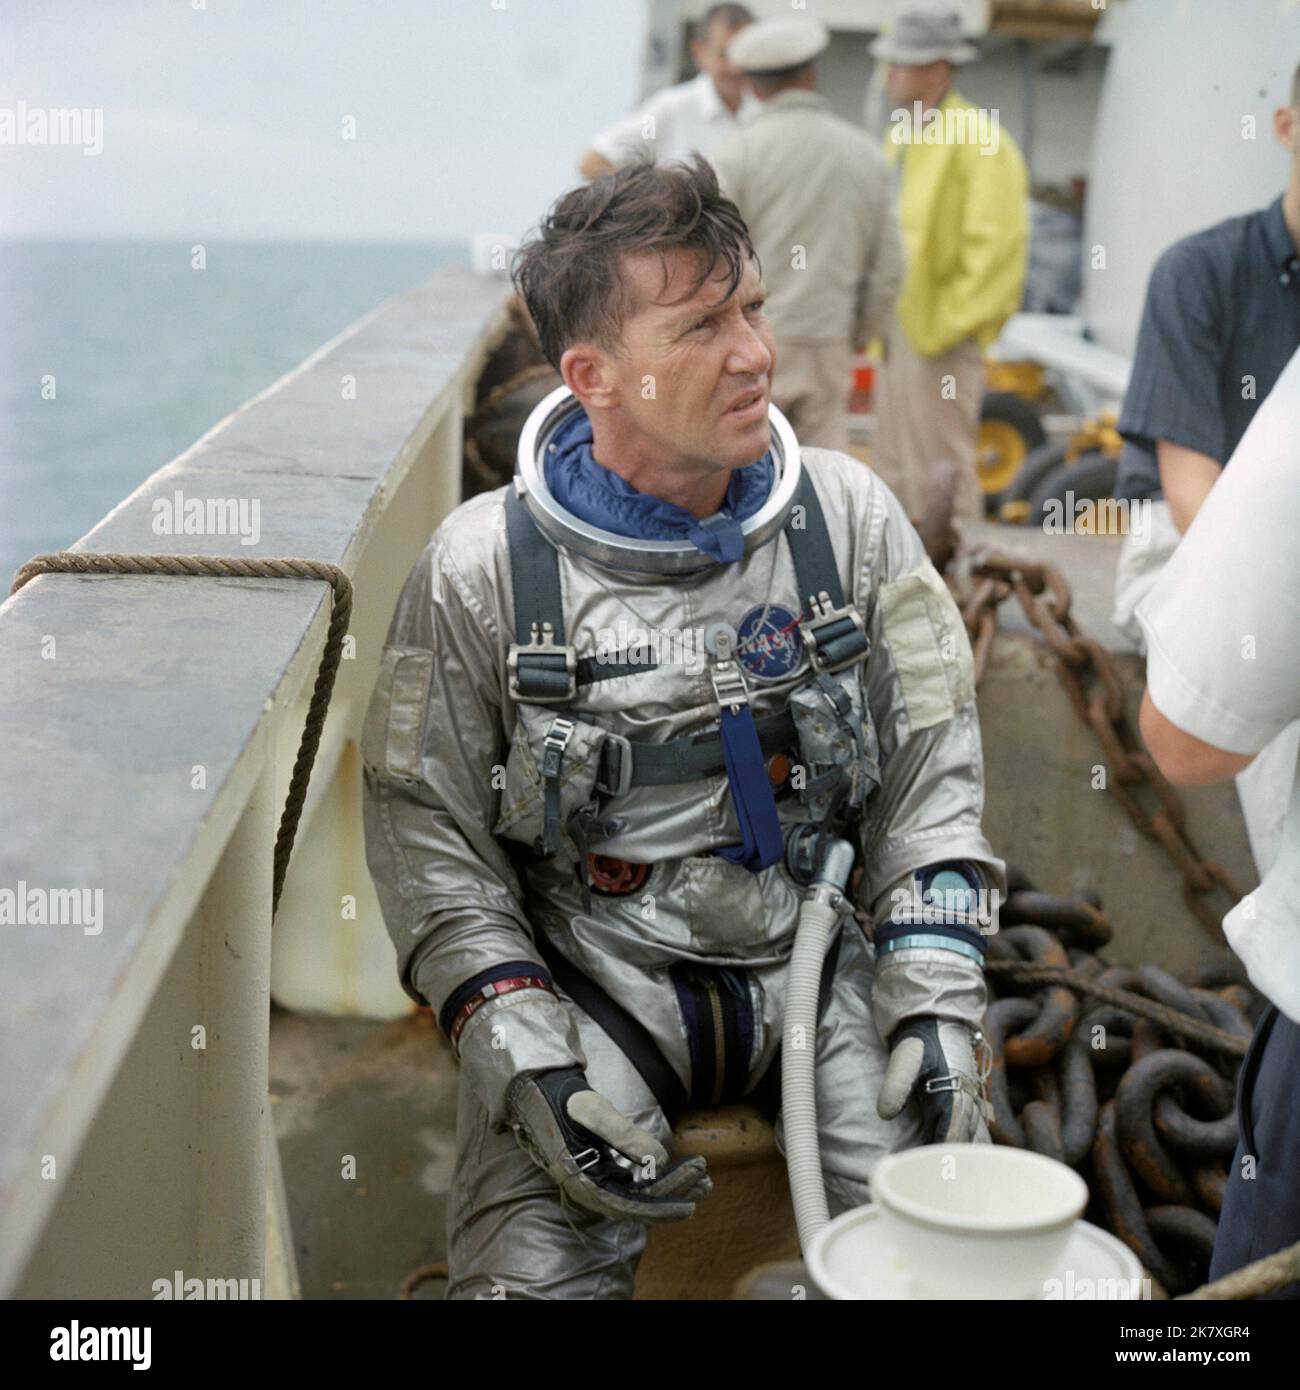 L'astronaute Walter M. Schirra Jr., commandant de Gemini VI, s'entraîne lors d'un entraînement d'évacuation de l'eau à bord du Retriever de la NASA, dans le golfe du Mexique. Cet entraînement a préparé les astronautes à sortir de la capsule après l'atterrissage dans l'océan. Banque D'Images